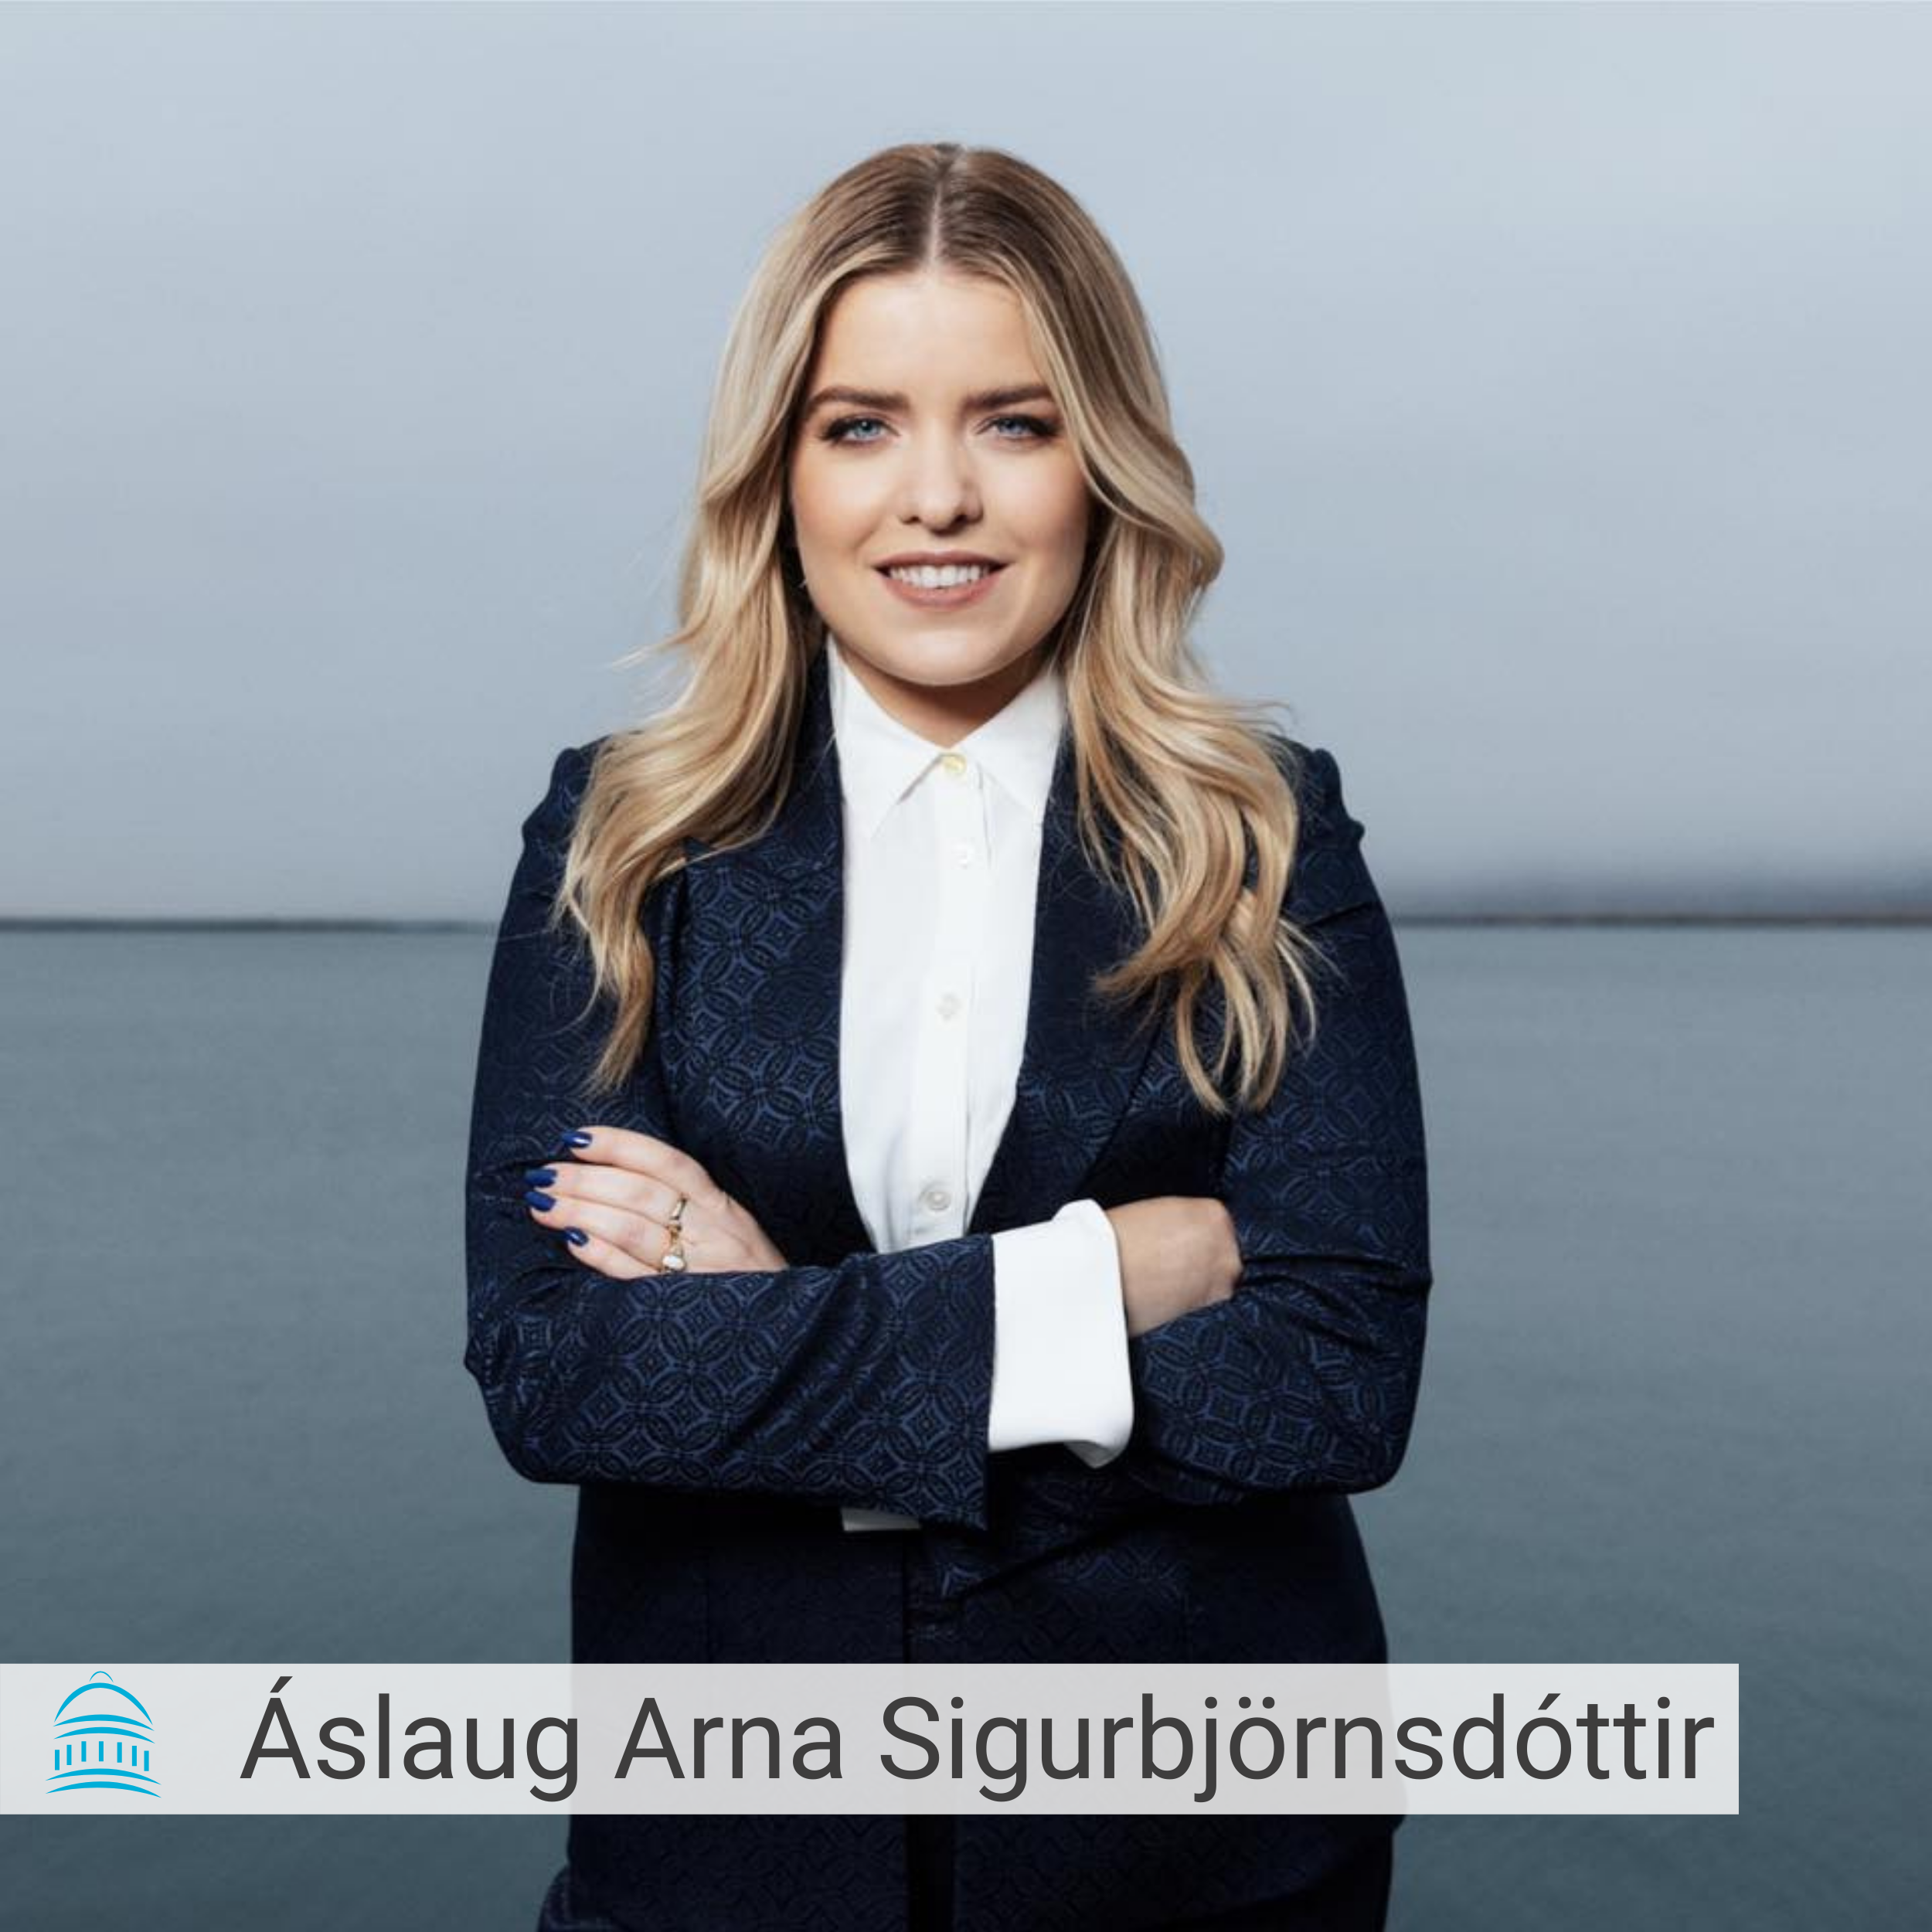 Picture of Áslaug Arna Sigurbjörnsdóttir